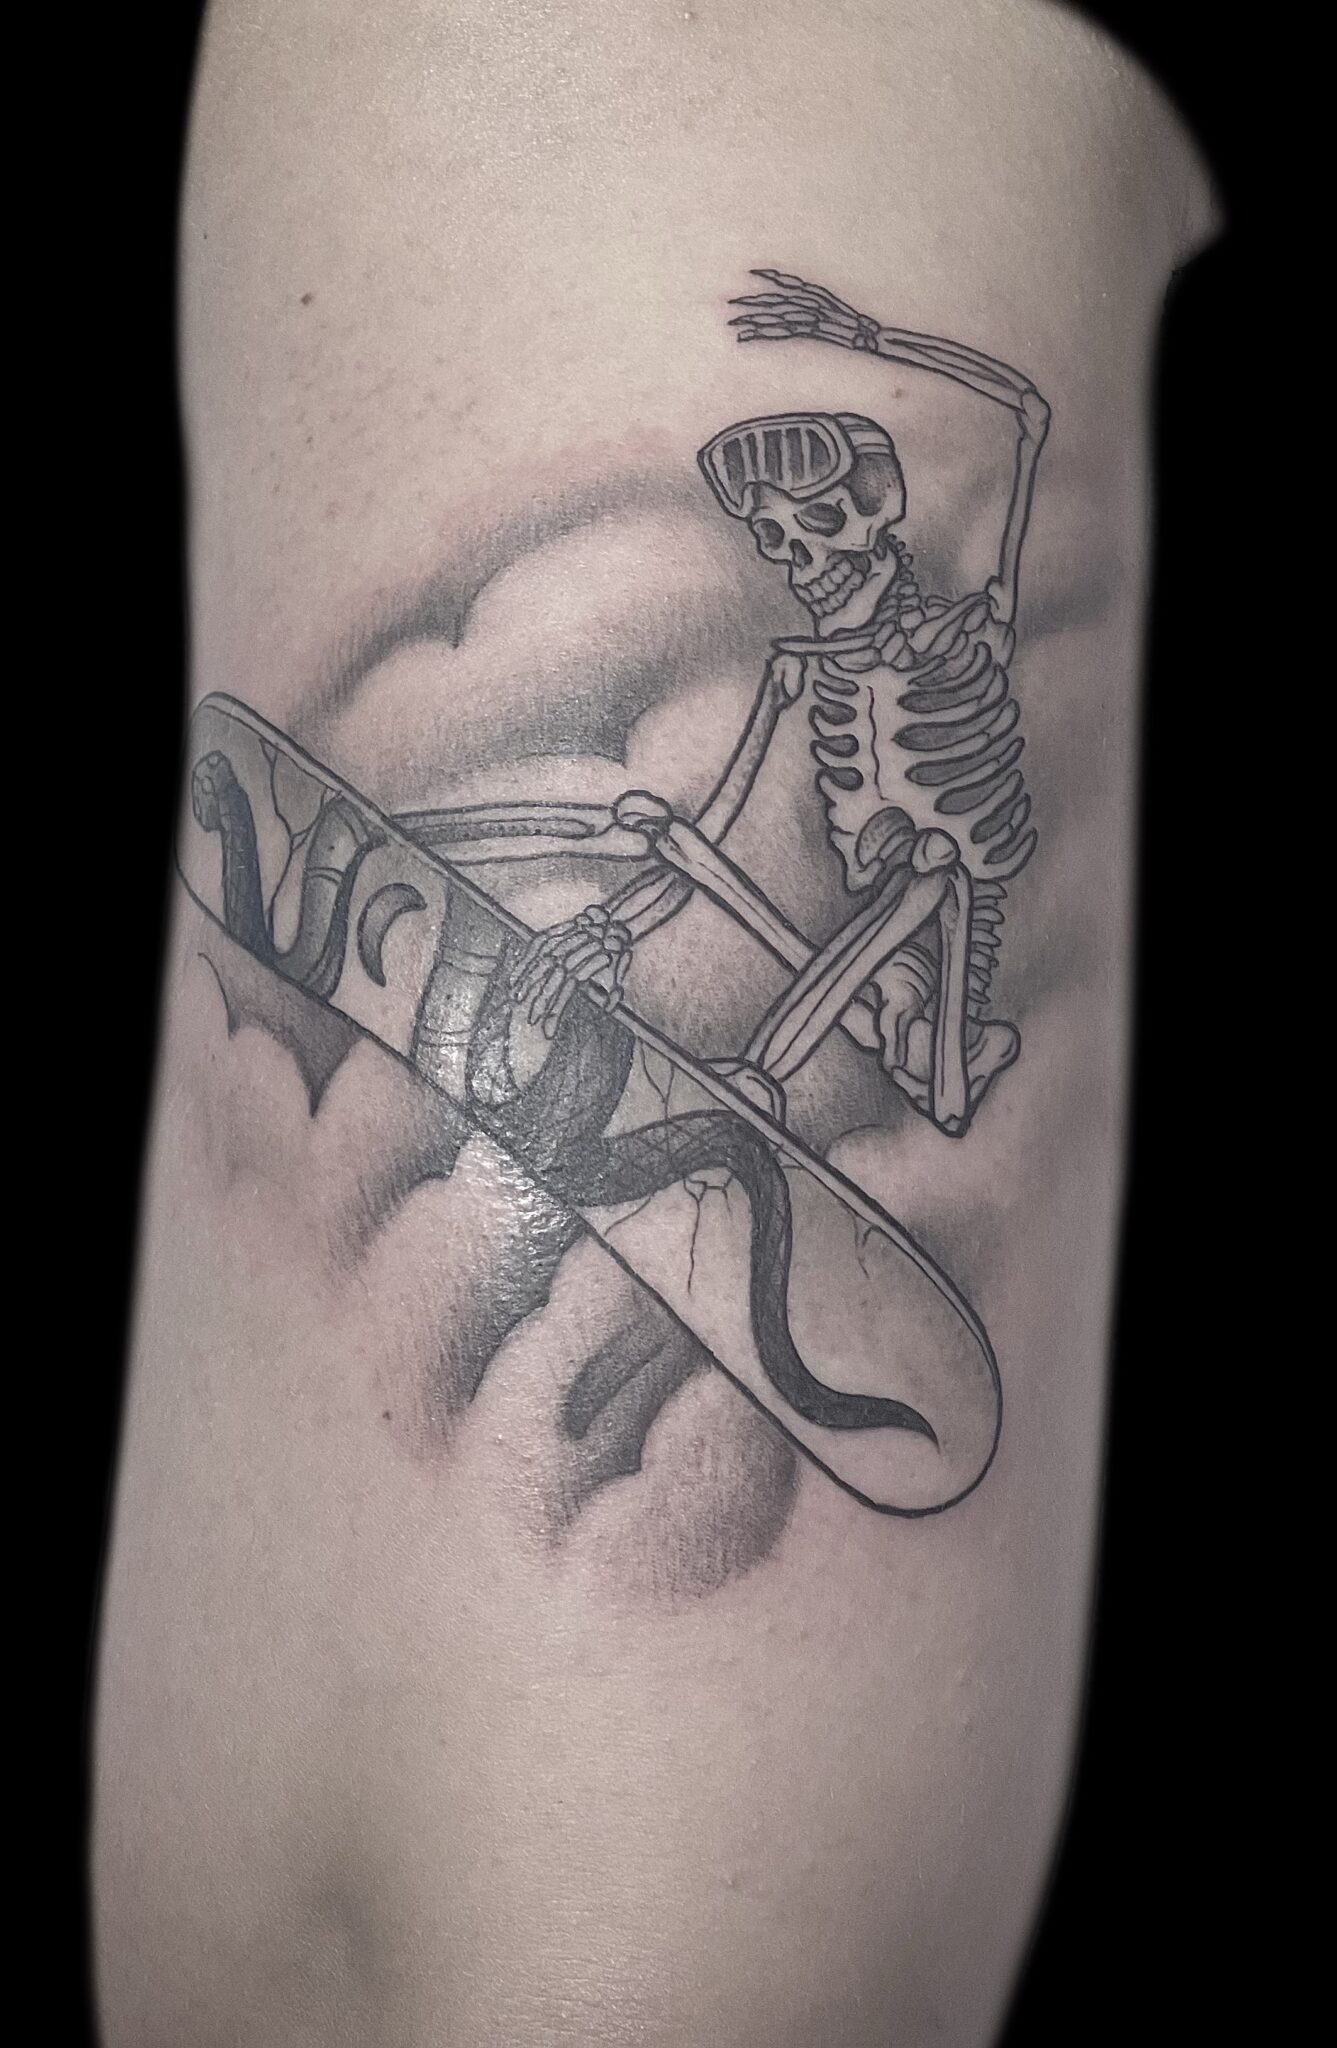 Skeleton surfer tattoo